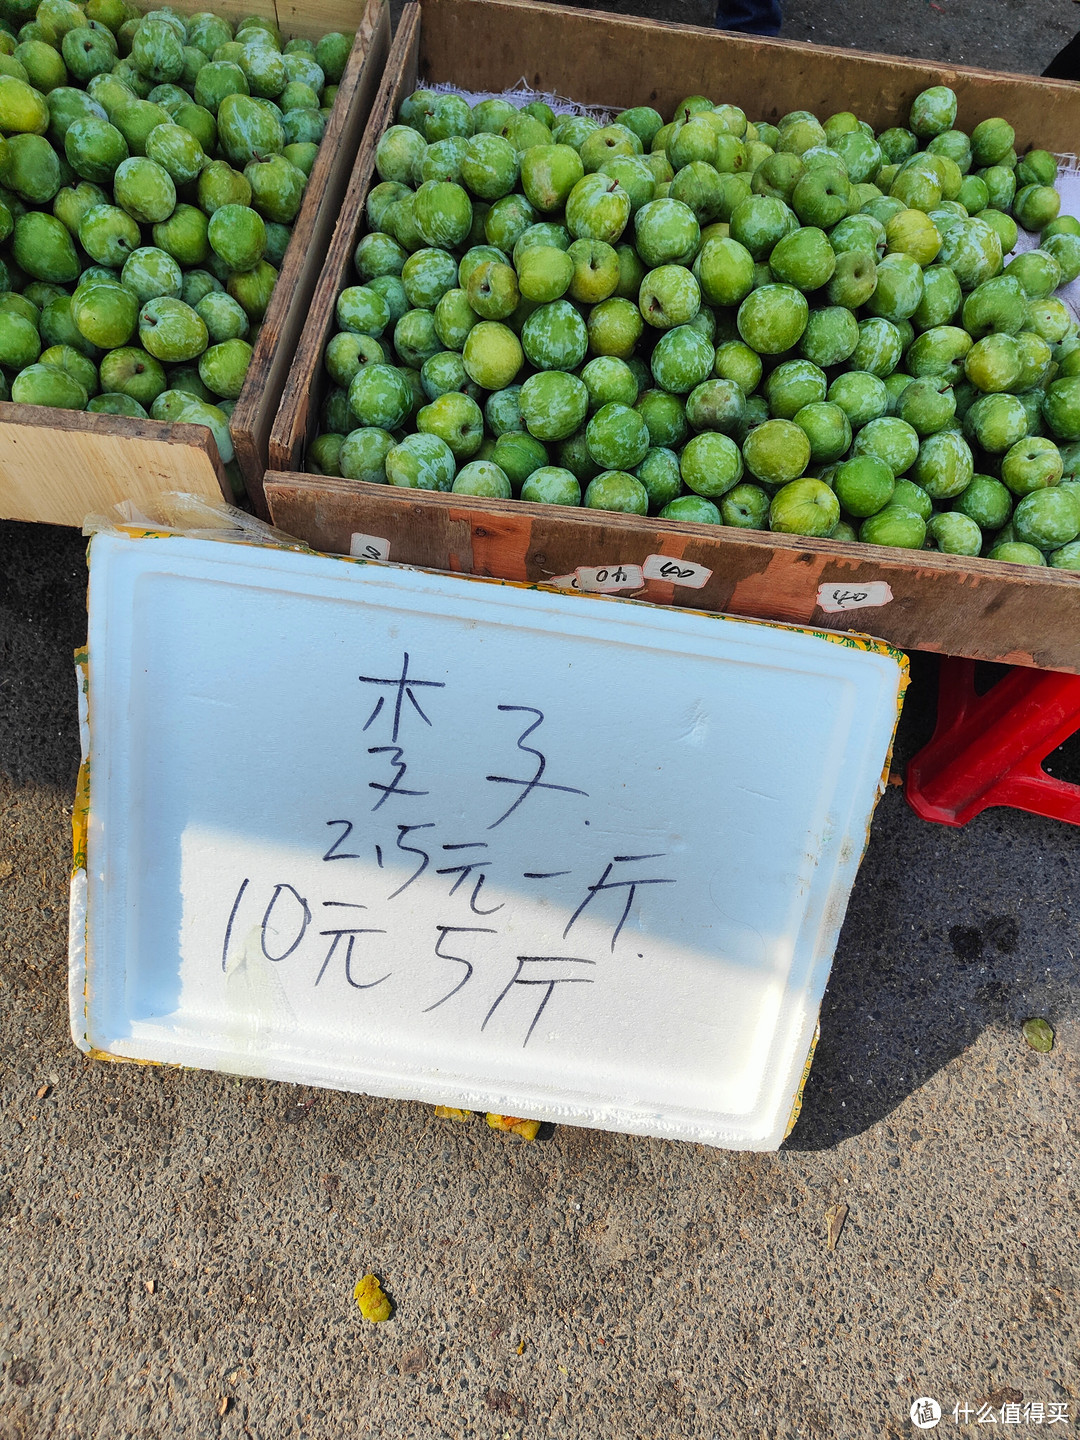 好吃，贵州和云南都有，都是2，3元一斤，回到广州就要4 5元了